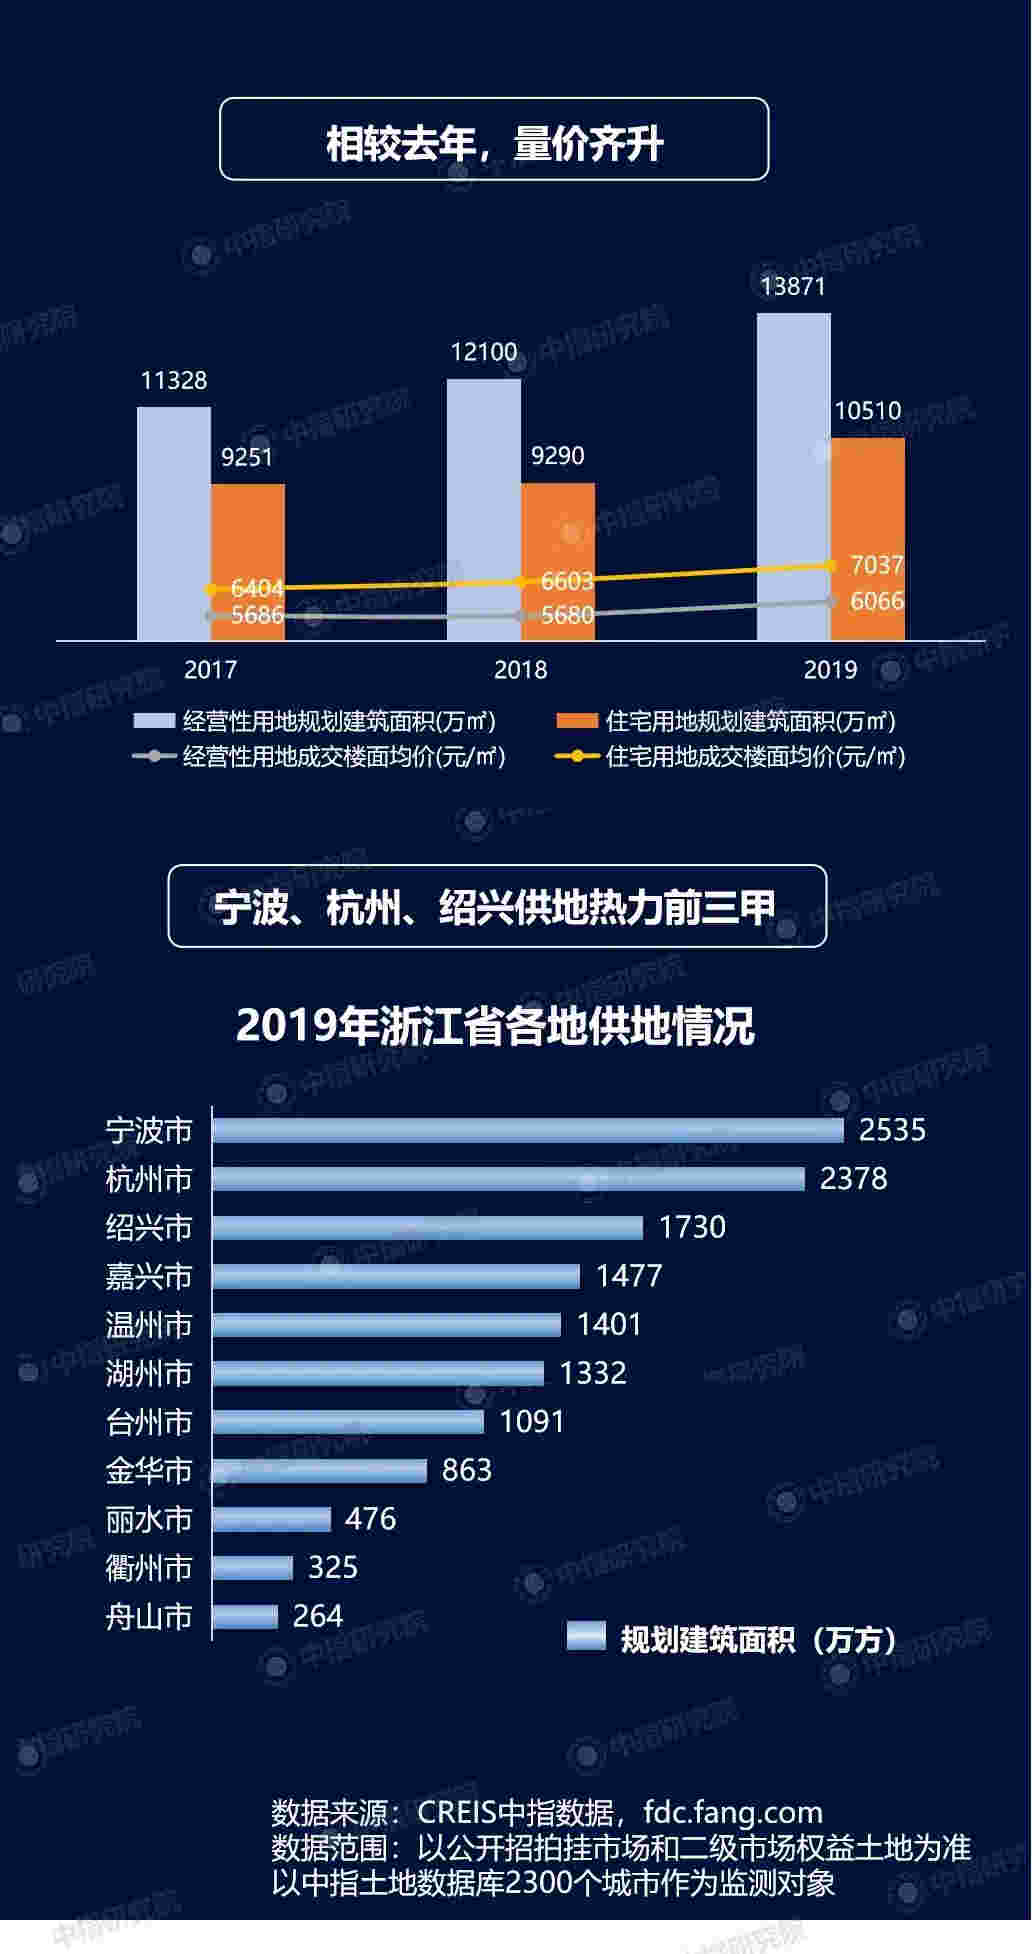 2019年浙江房地产企业拿地排行榜